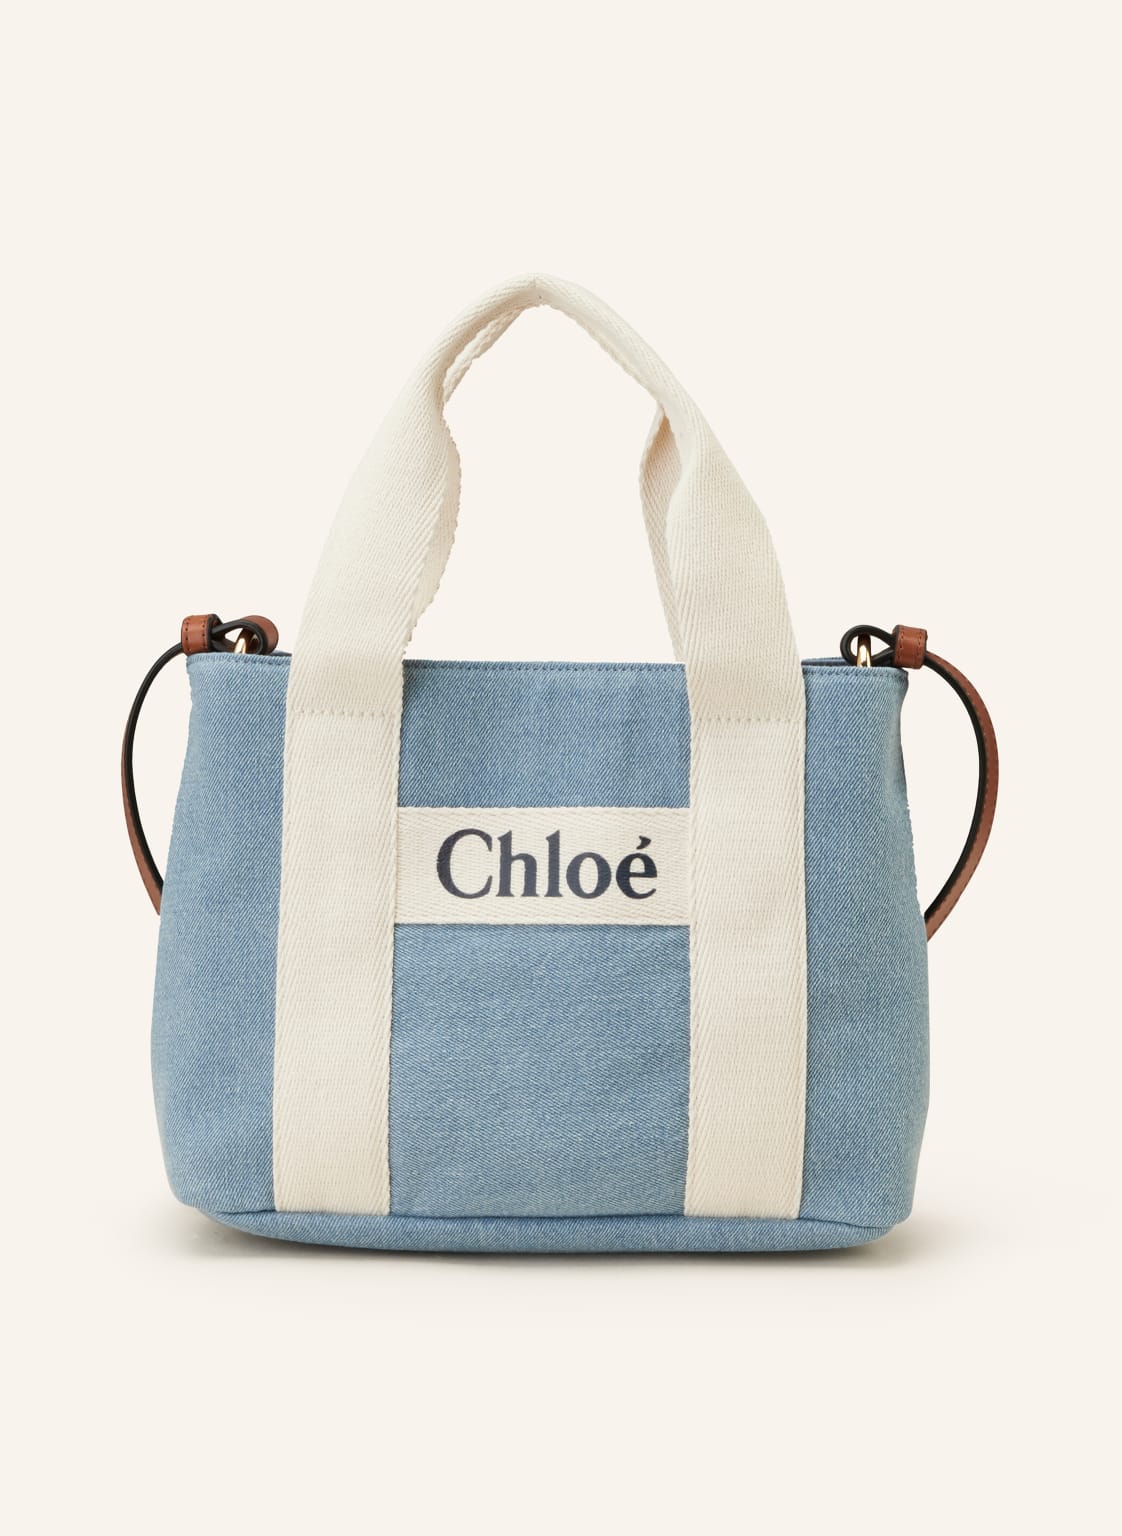 Chloé Handtasche blau von Chloé